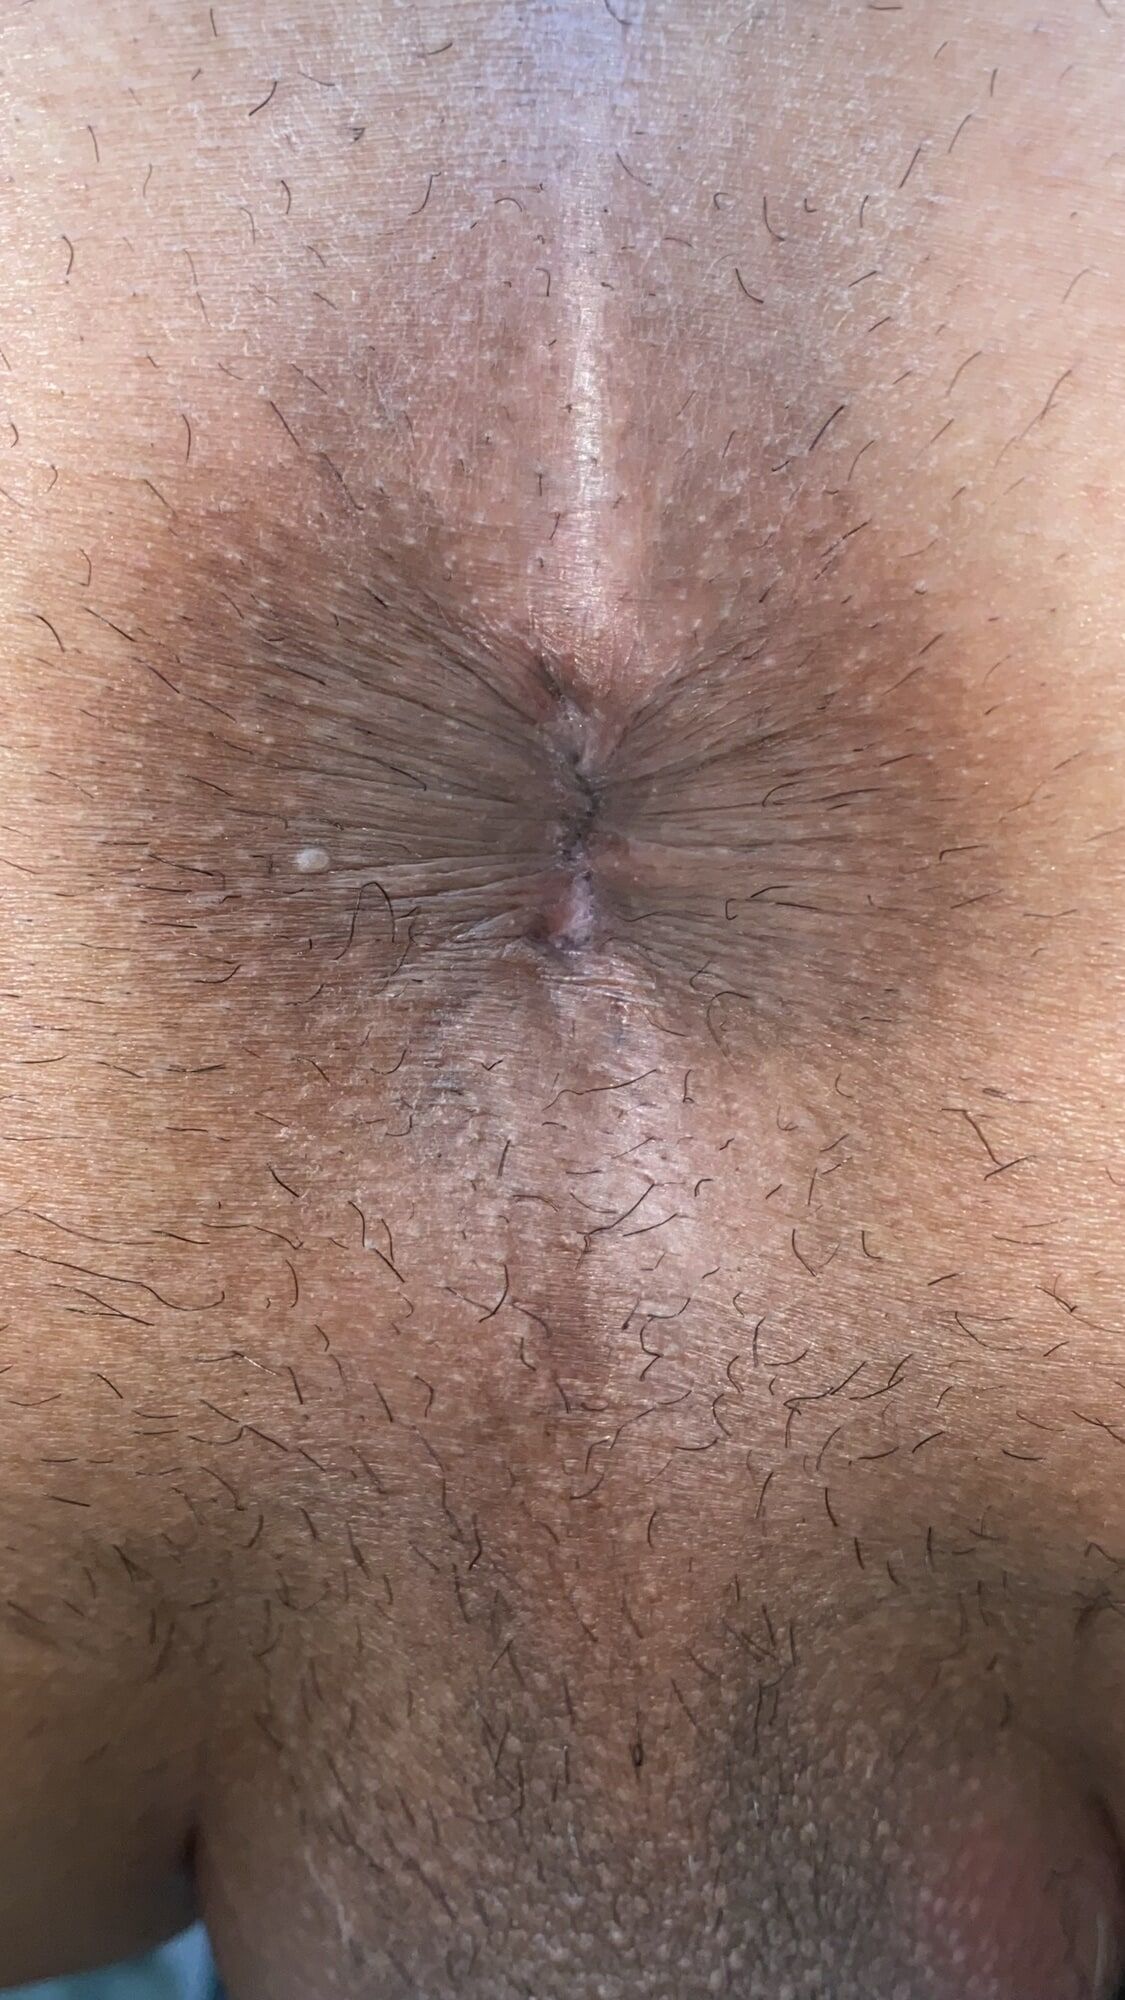 Close-up of a man's anus #56